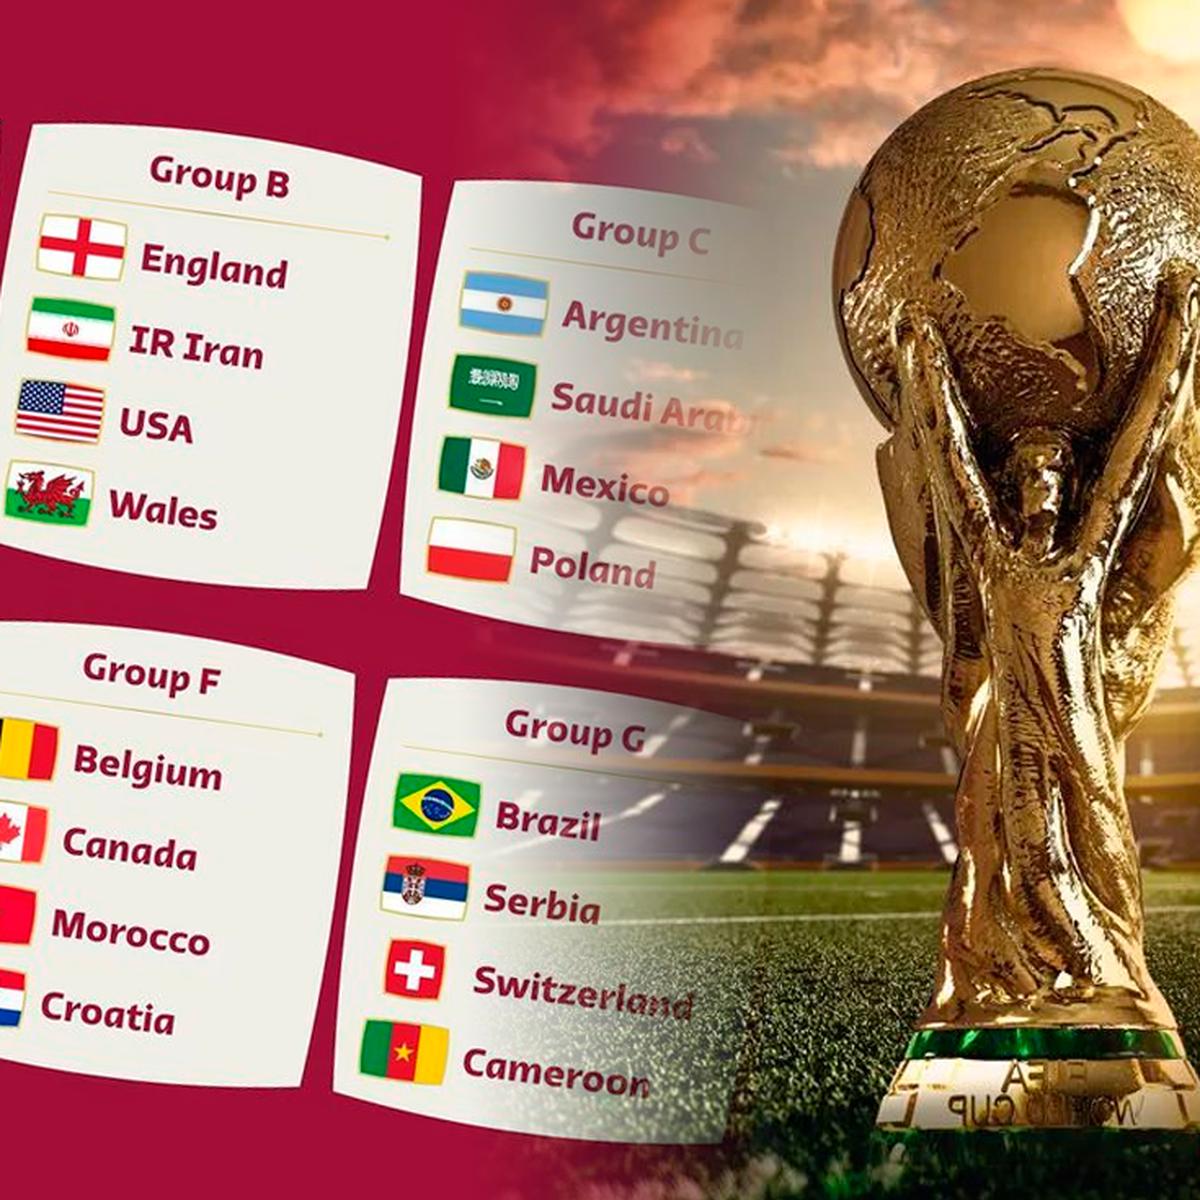 Partidos de hoy, jueves 1 de diciembre: quienes y resultados de Croacia vs. Bélgica, Canadá vs. Japón vs. España, Costa Rica vs. Alemania por el Mundial Qatar 2022 |